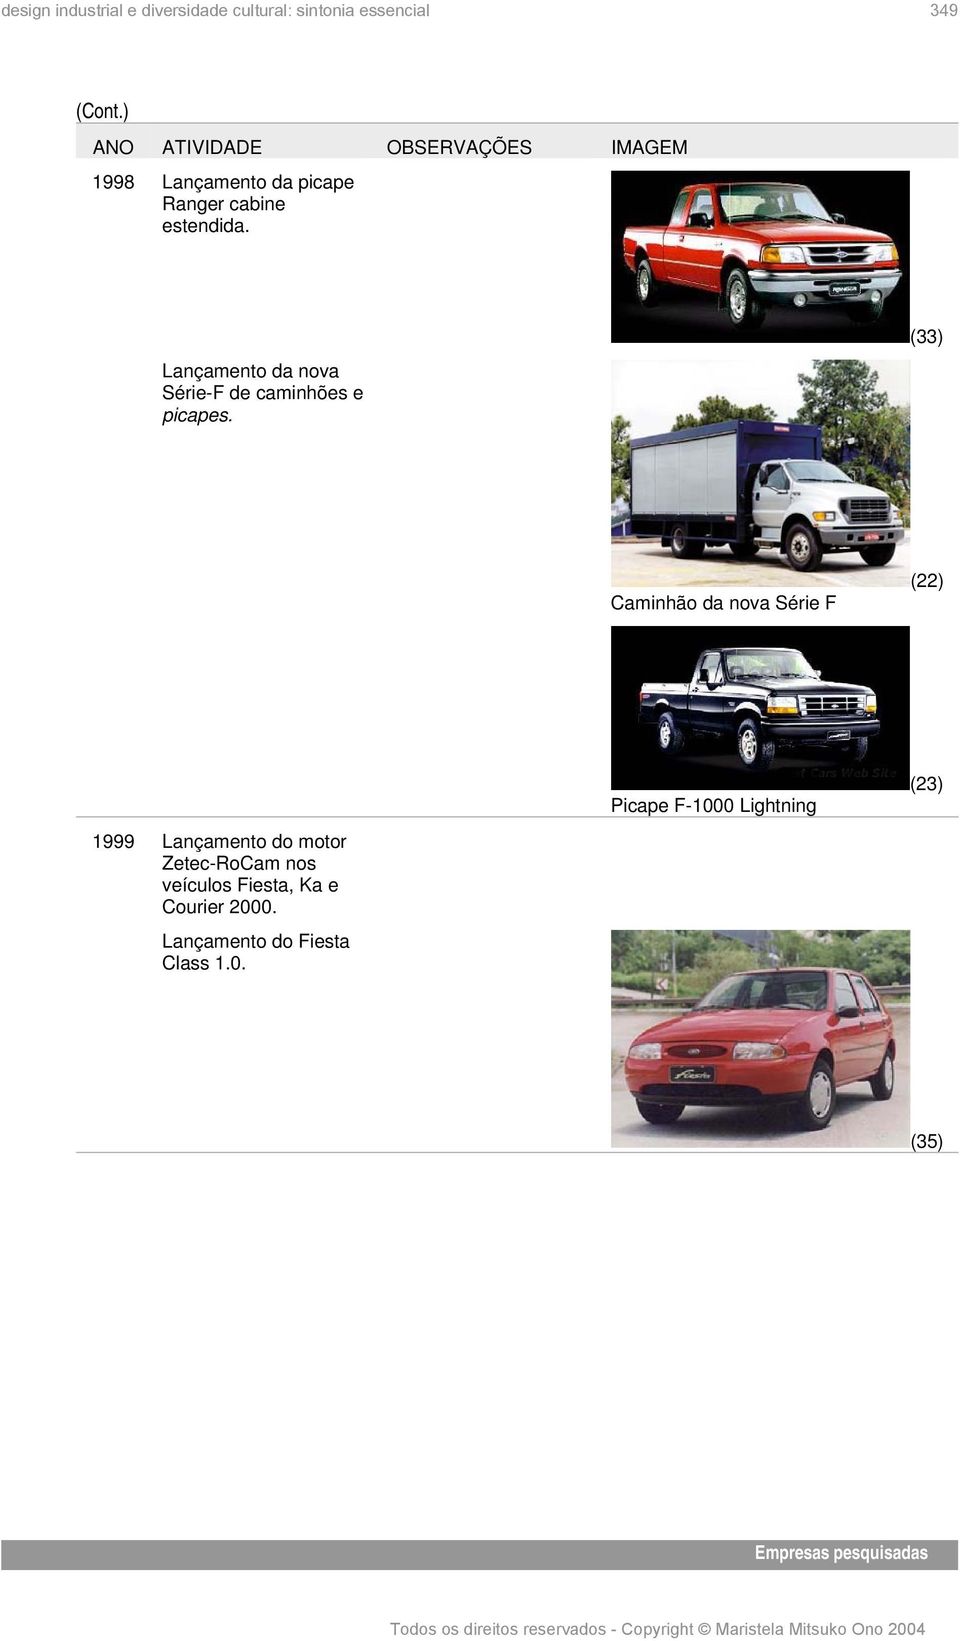 (33) Caminhão da nova Série F (22) 1999 Lançamento do motor Zetec-RoCam nos veículos